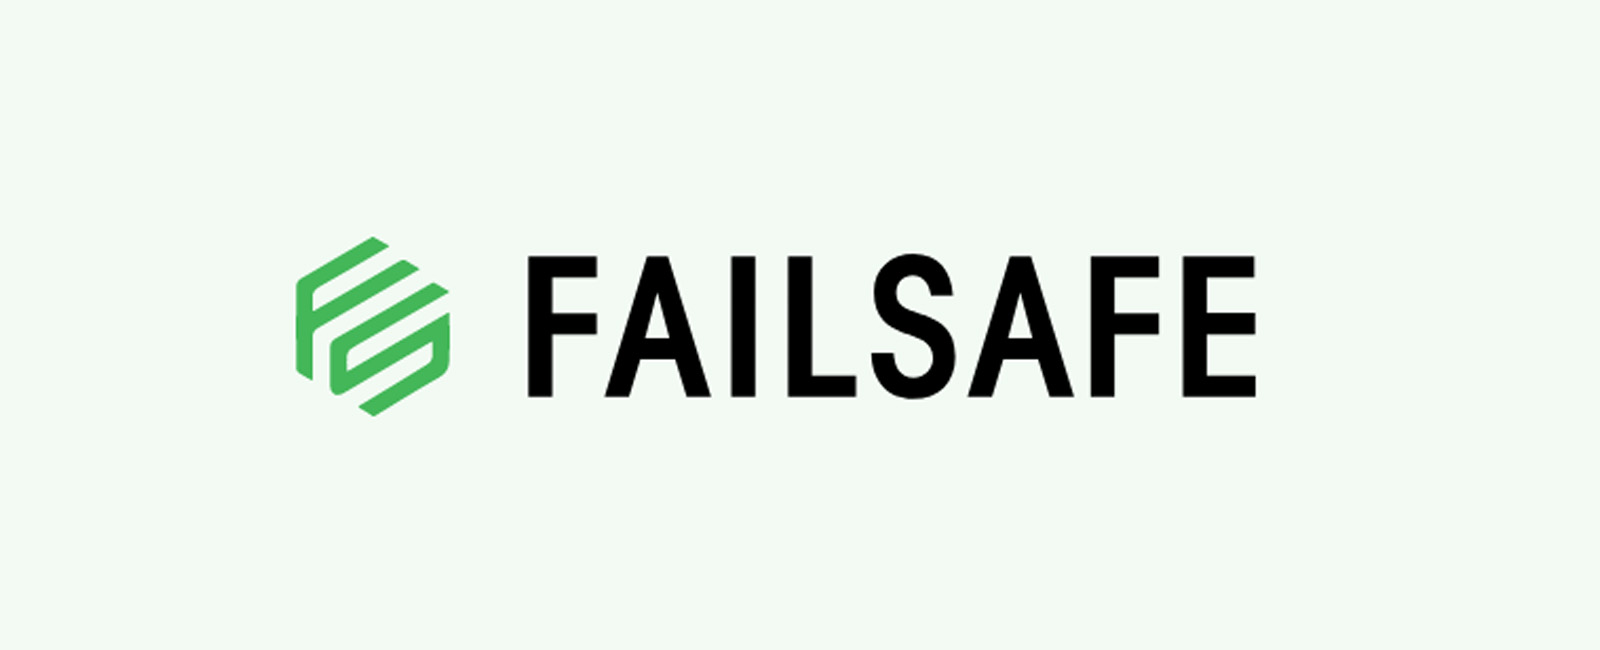 واژه Fail-Safe به چه معناست؟